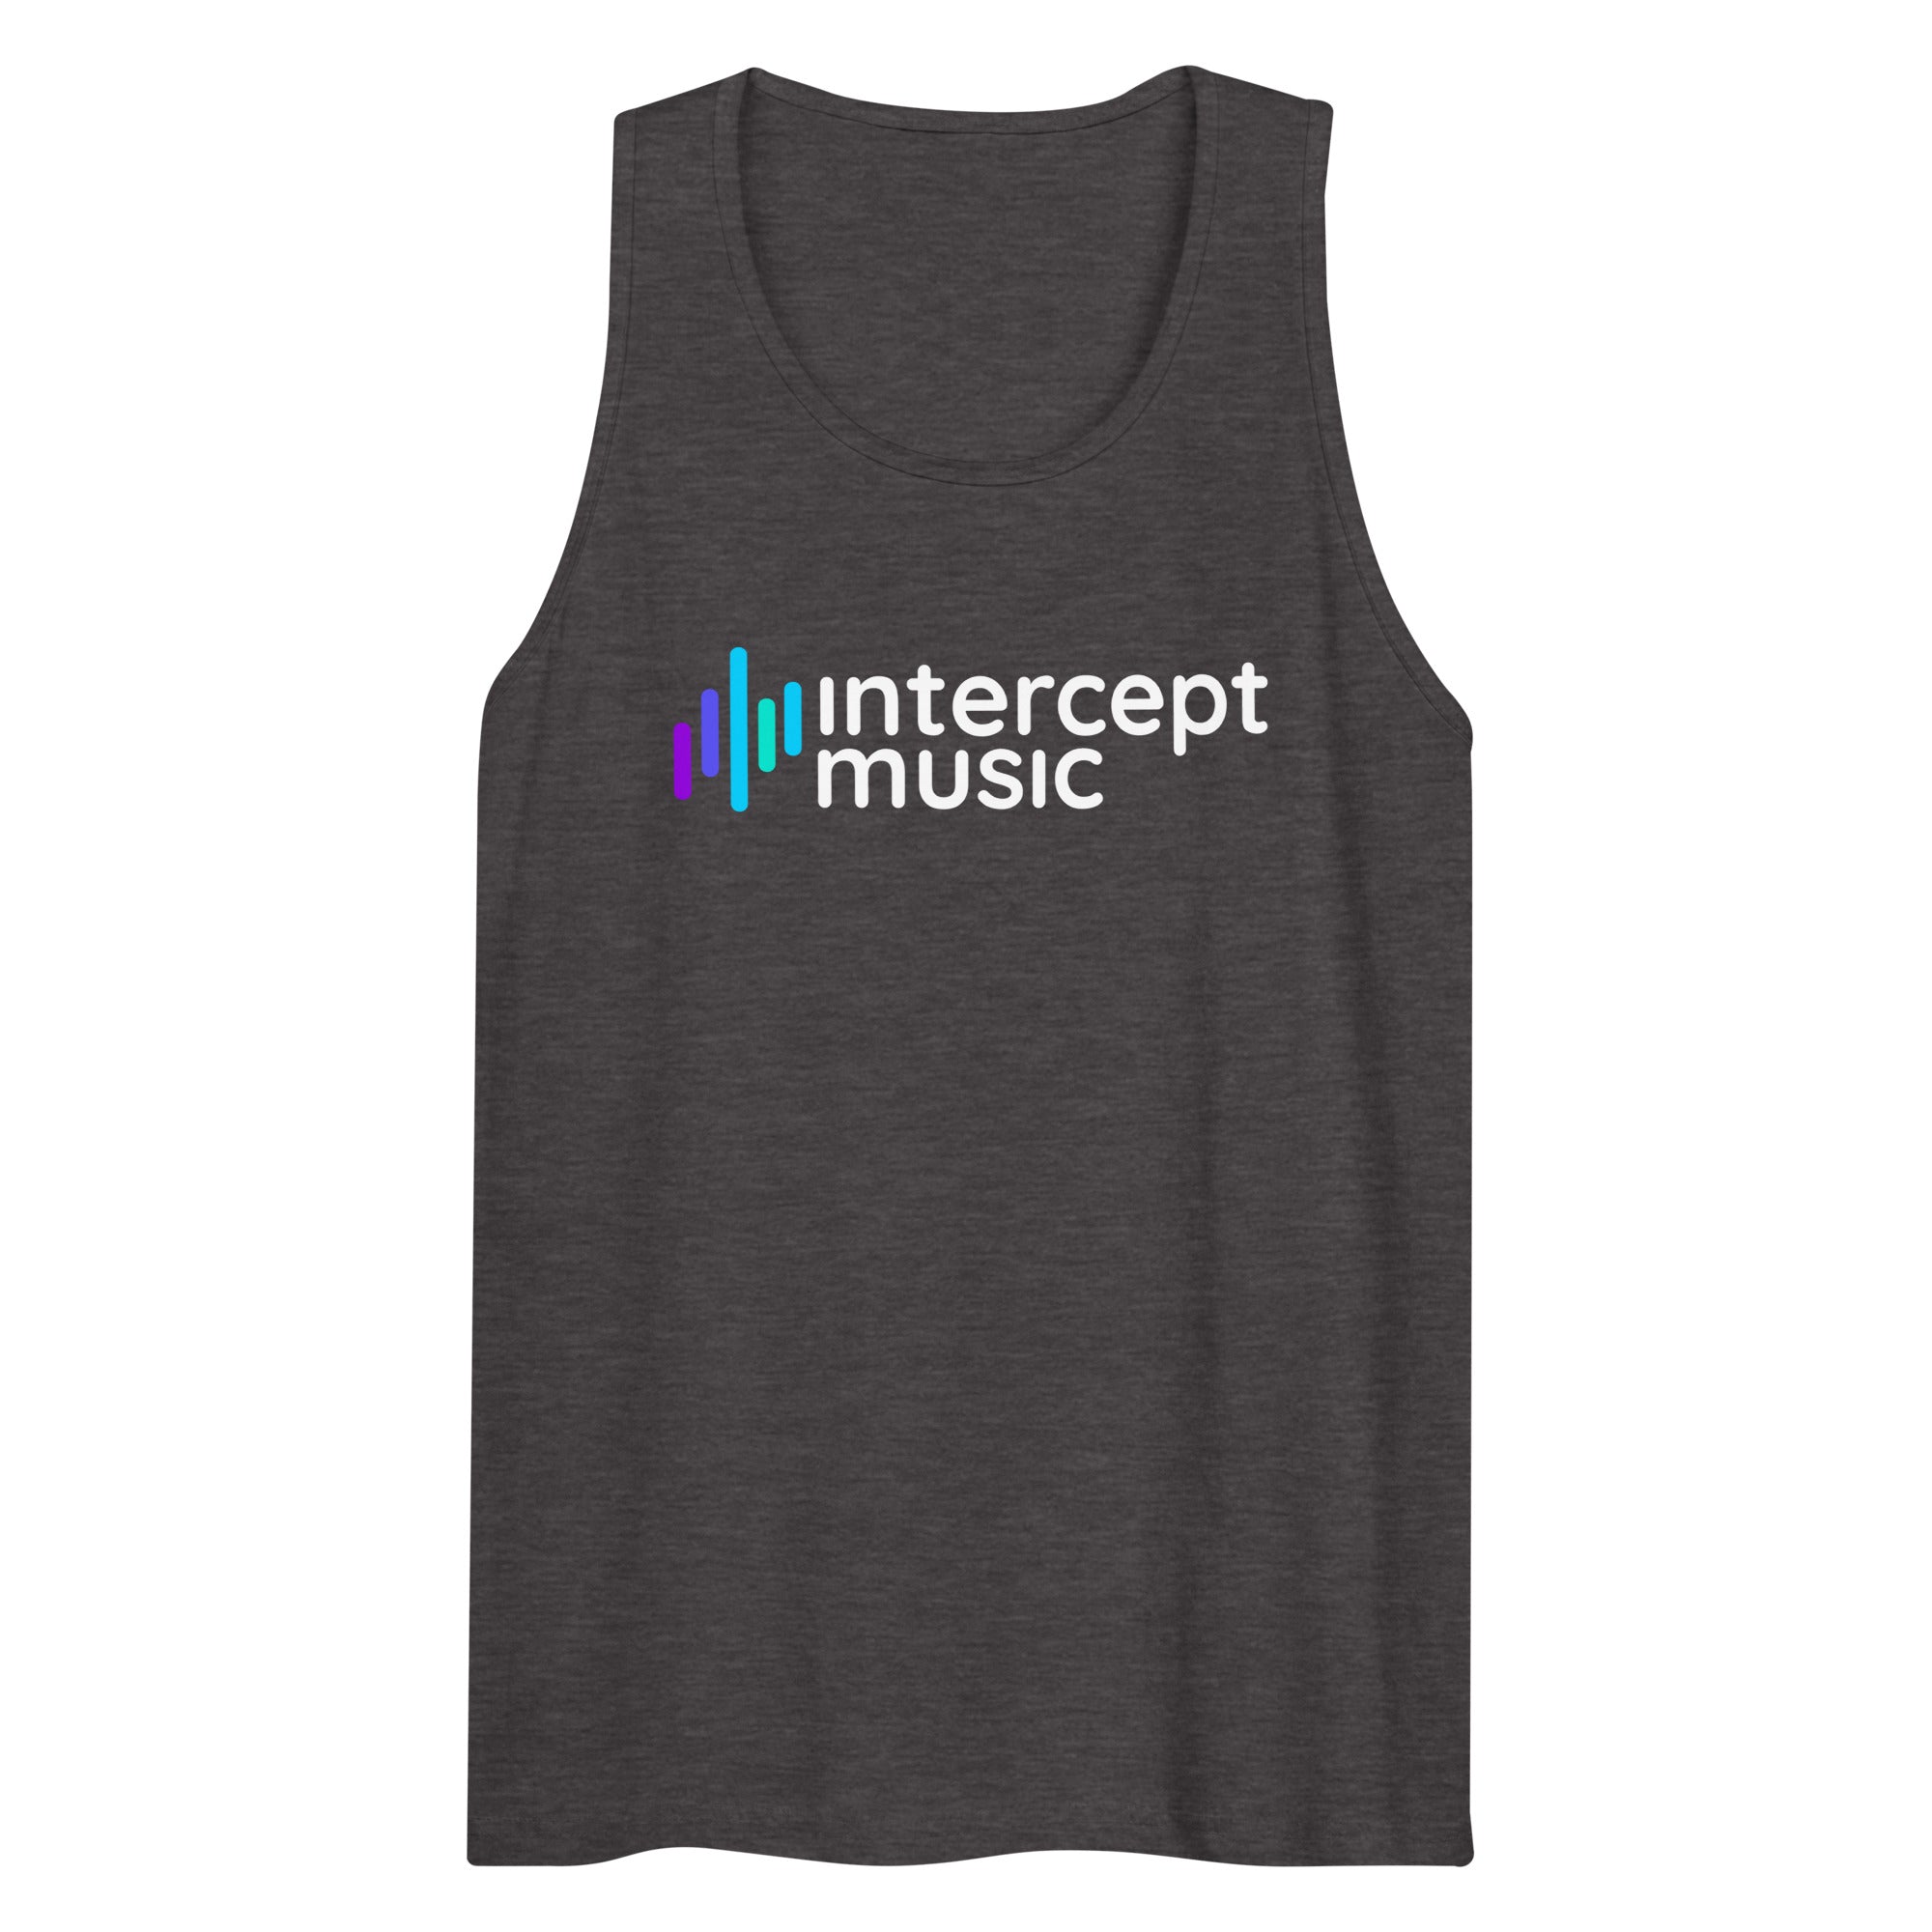 Intercept Music - Men’s premium tank top